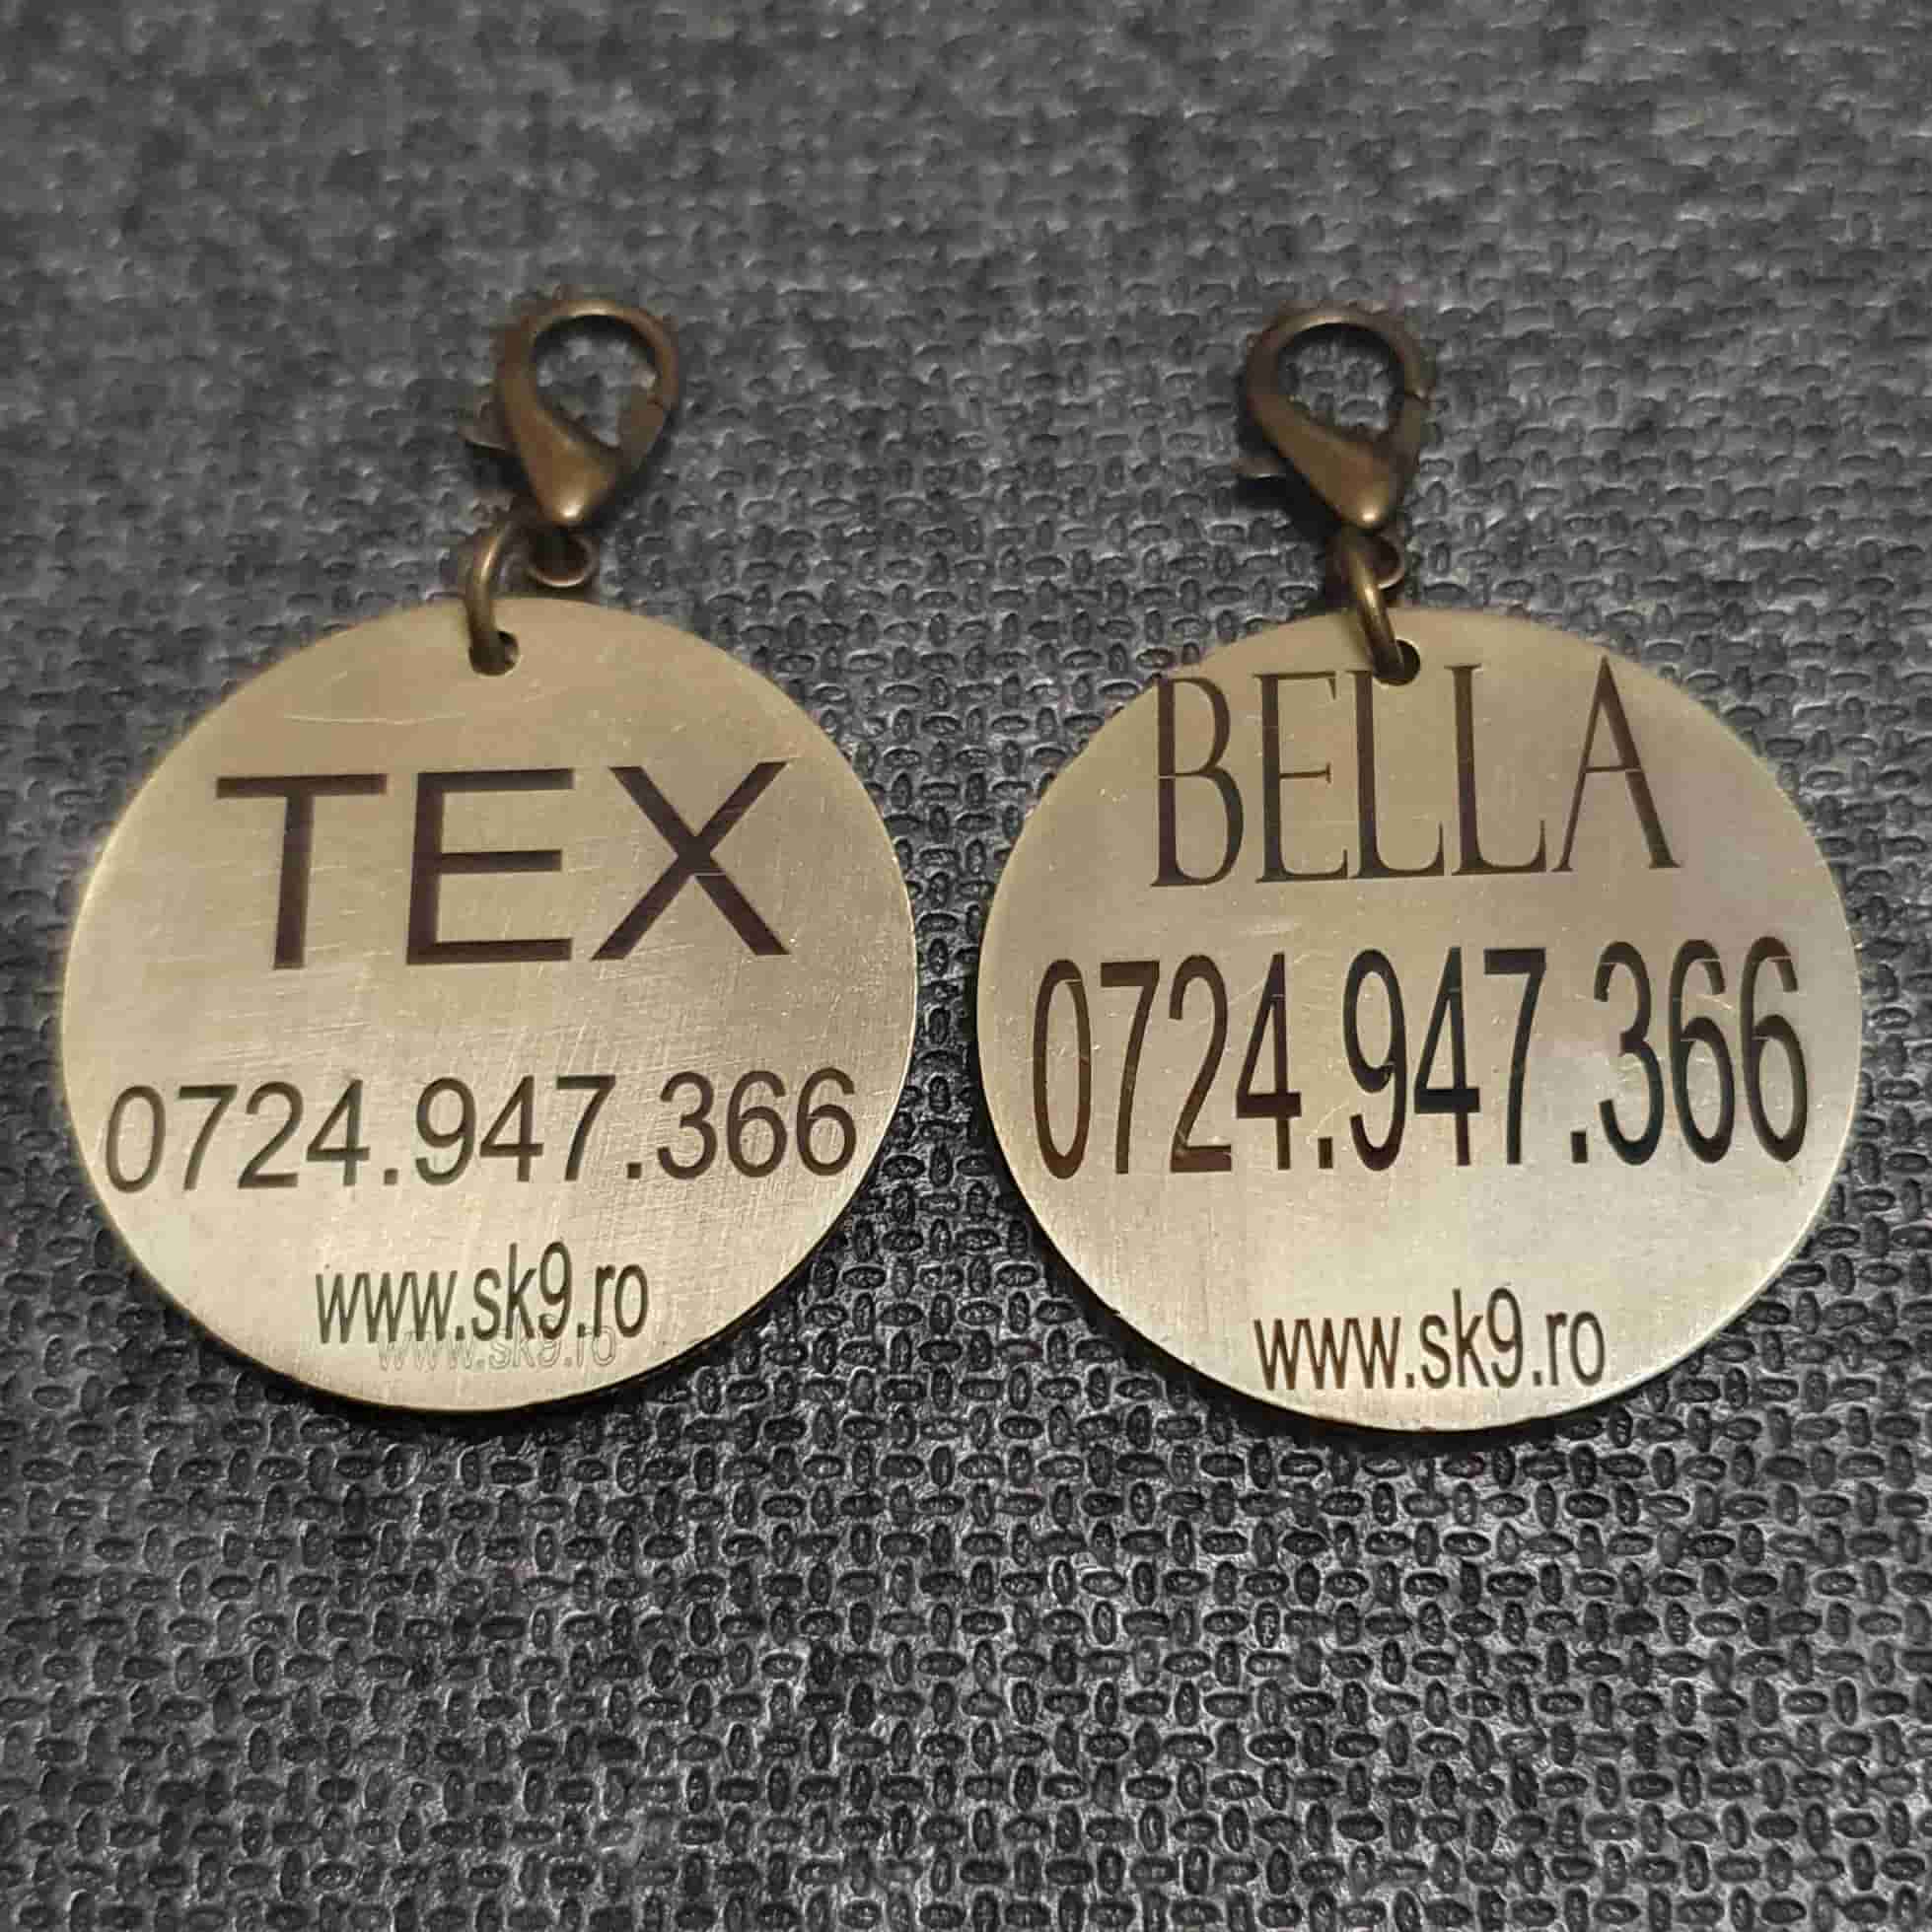 Medalion personalizat cu numele 'Tex' si 'Bella'